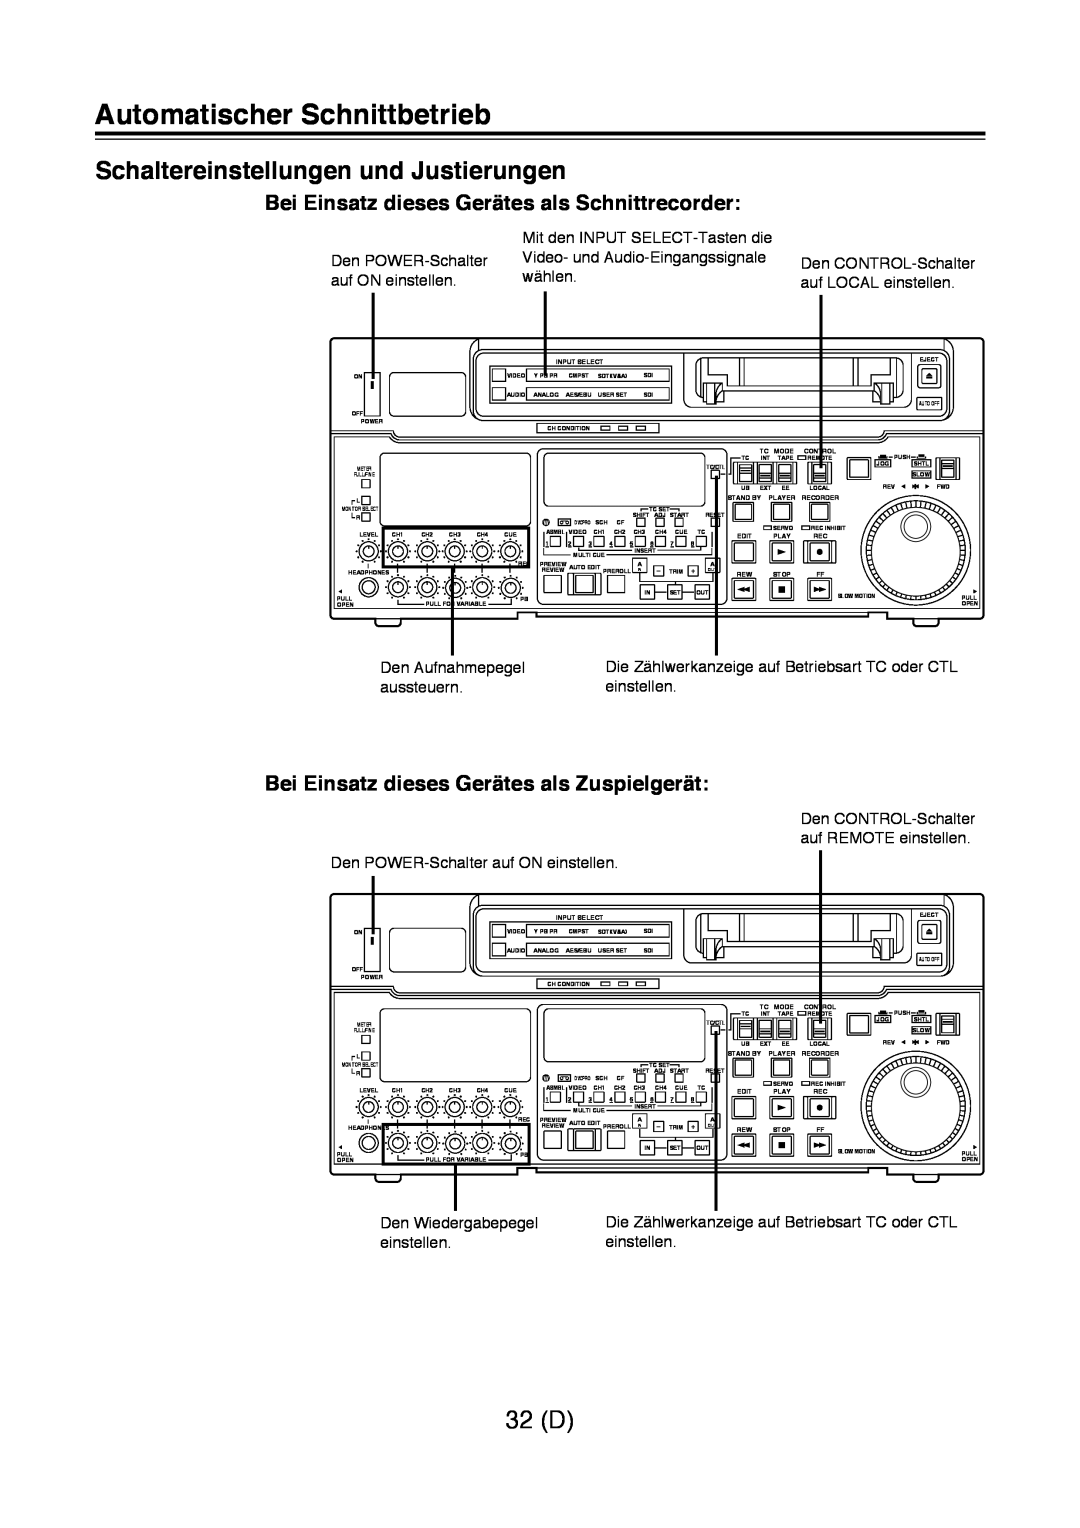 Panasonic AJ-D960 operating instructions Automatischer Schnittbetrieb, Schaltereinstellungen und Justierungen, 32 D 